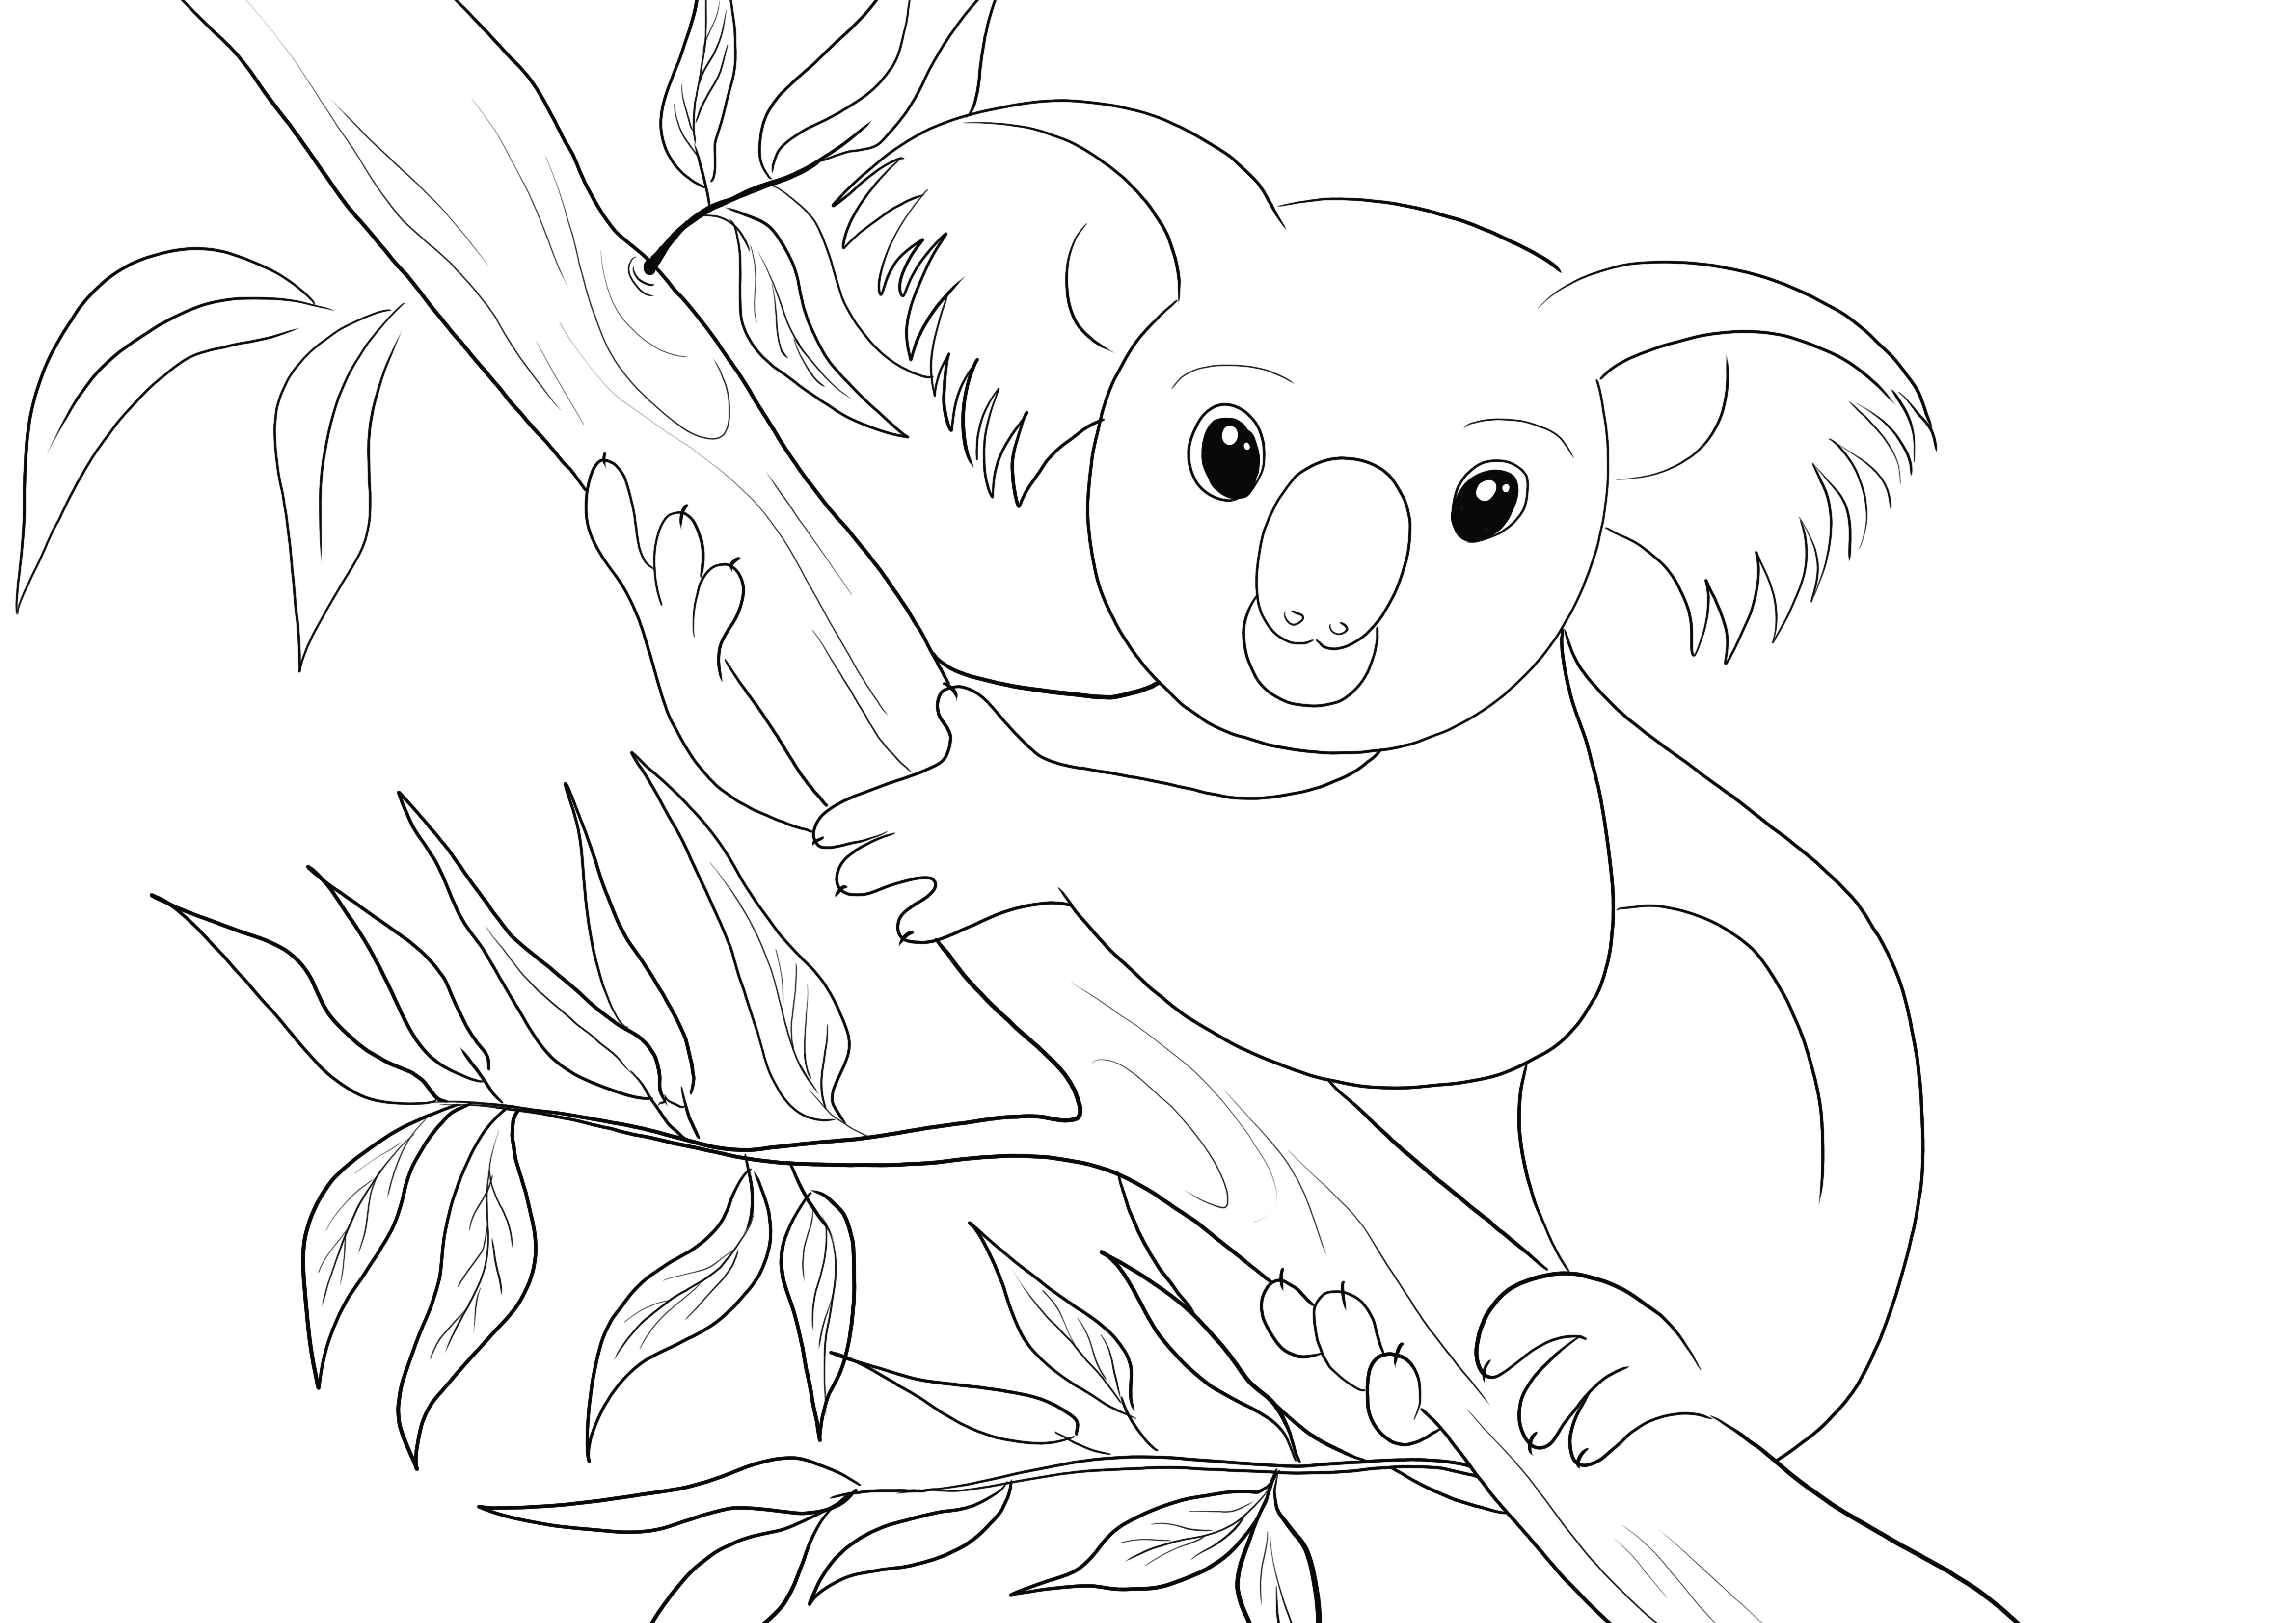 Simpatico Koala da colorare gratis da stampare e scaricare